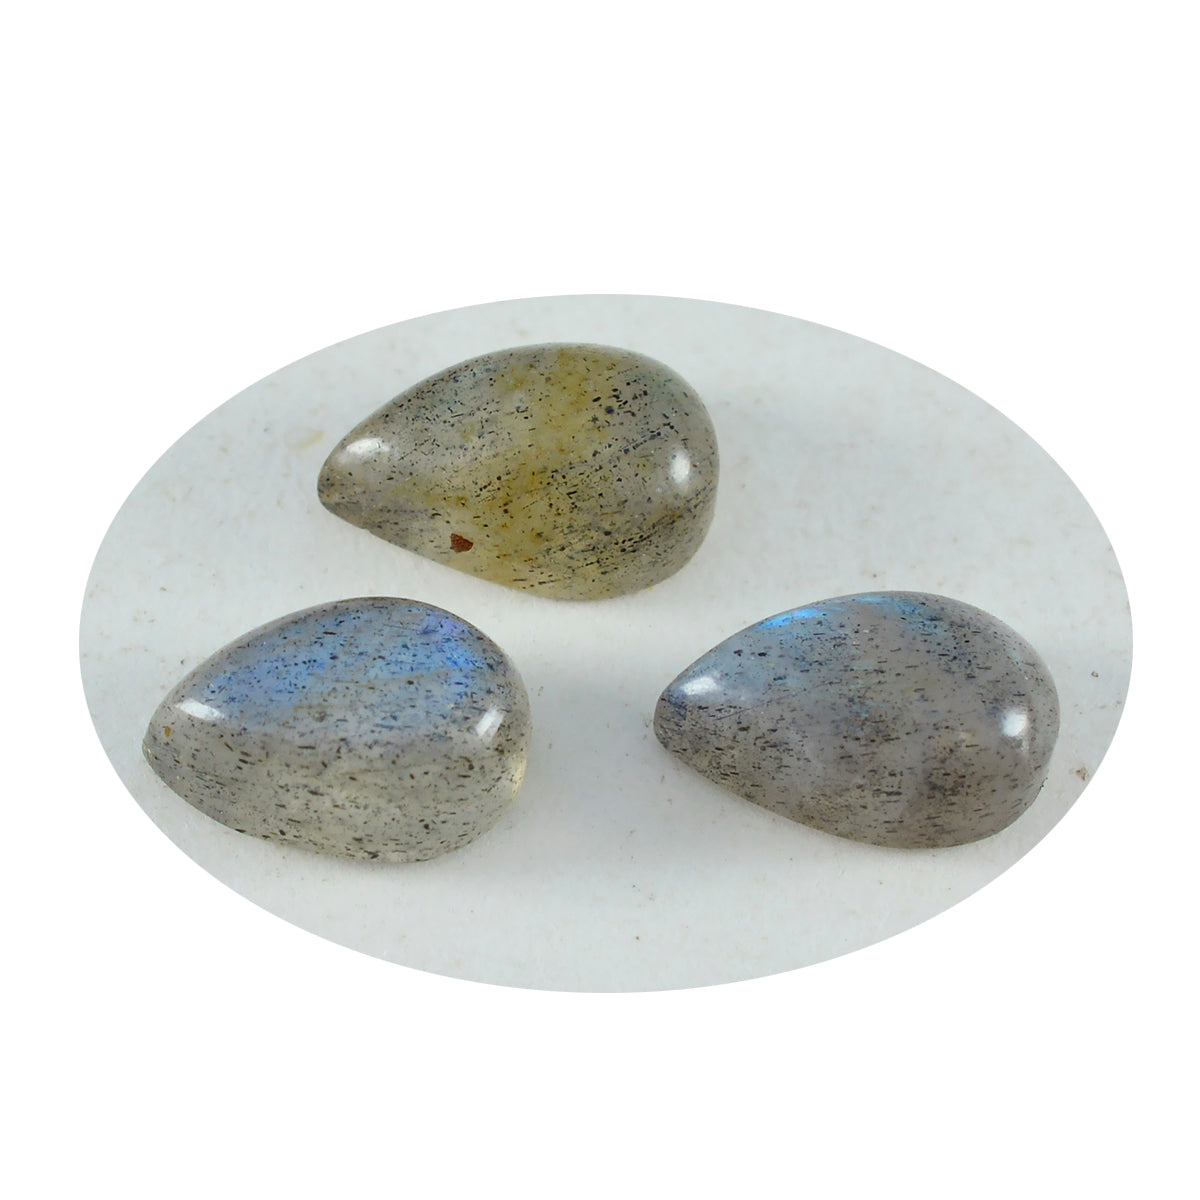 riyogems 1 шт. серый лабрадор кабошон 6x9 мм грушевидной формы красивый качественный драгоценный камень